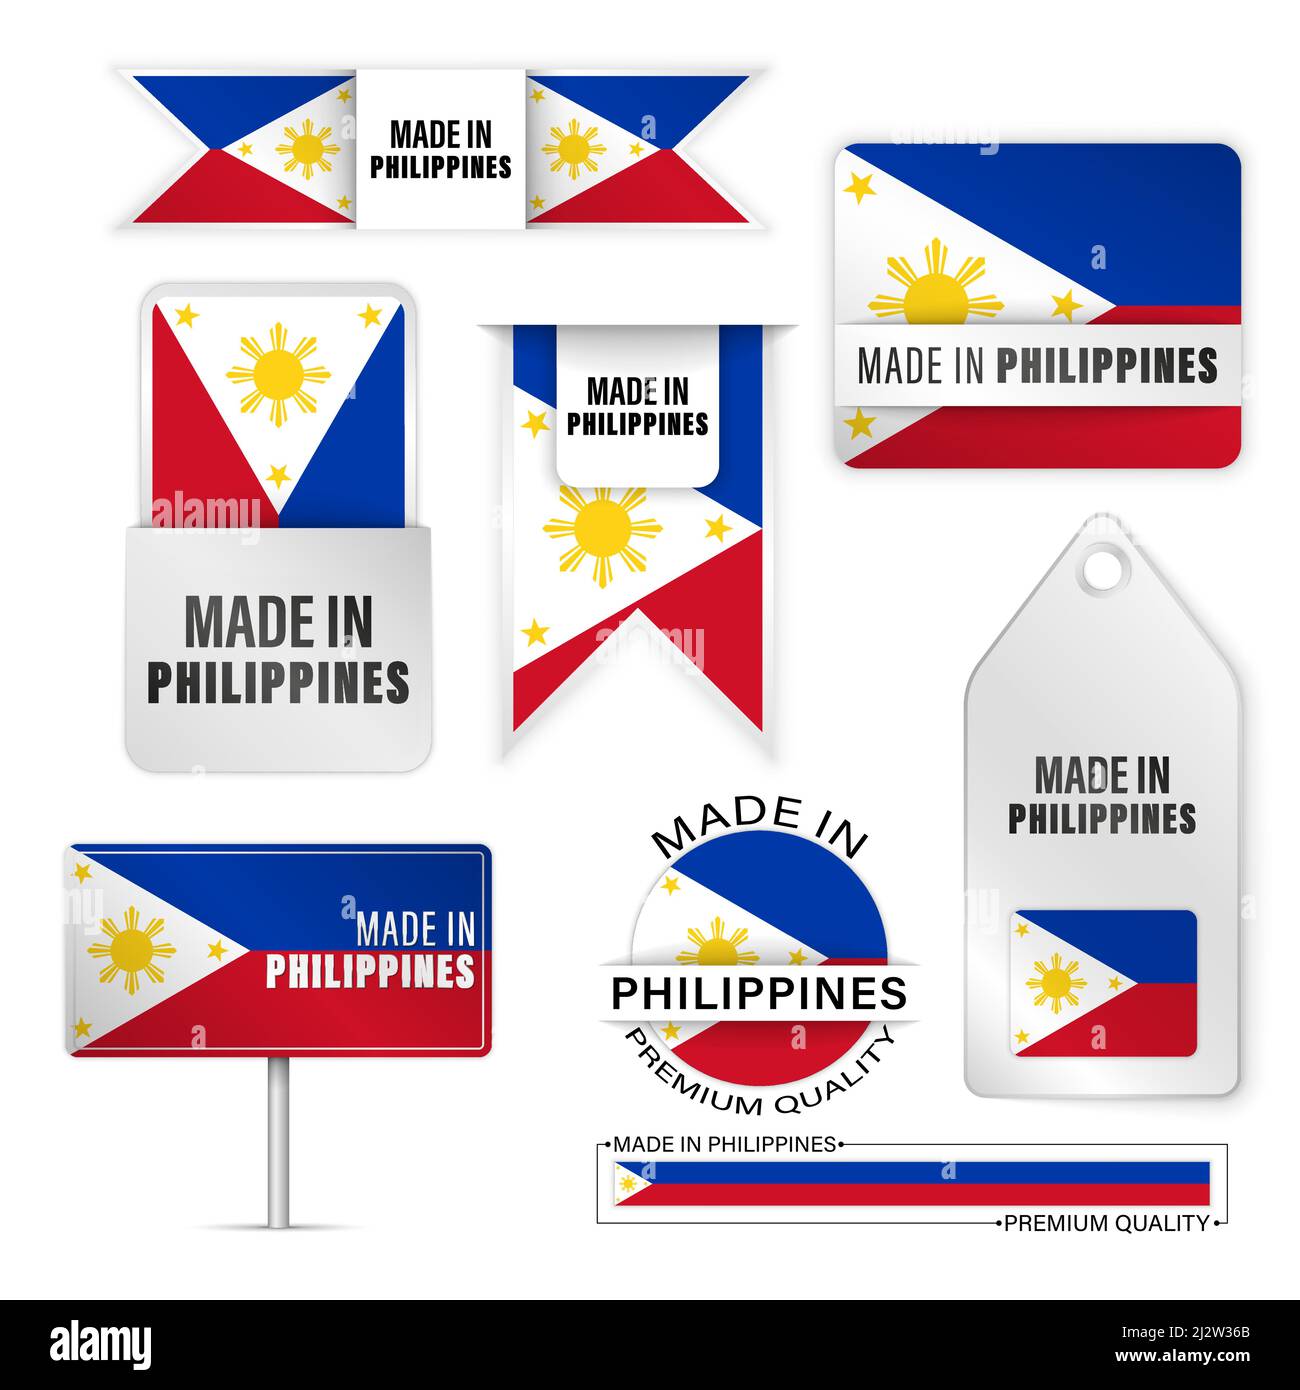 Made in Philippines Grafik und Labels Set. Einige Elemente der Auswirkung für die Verwendung, die Sie daraus machen möchten. Stock Vektor